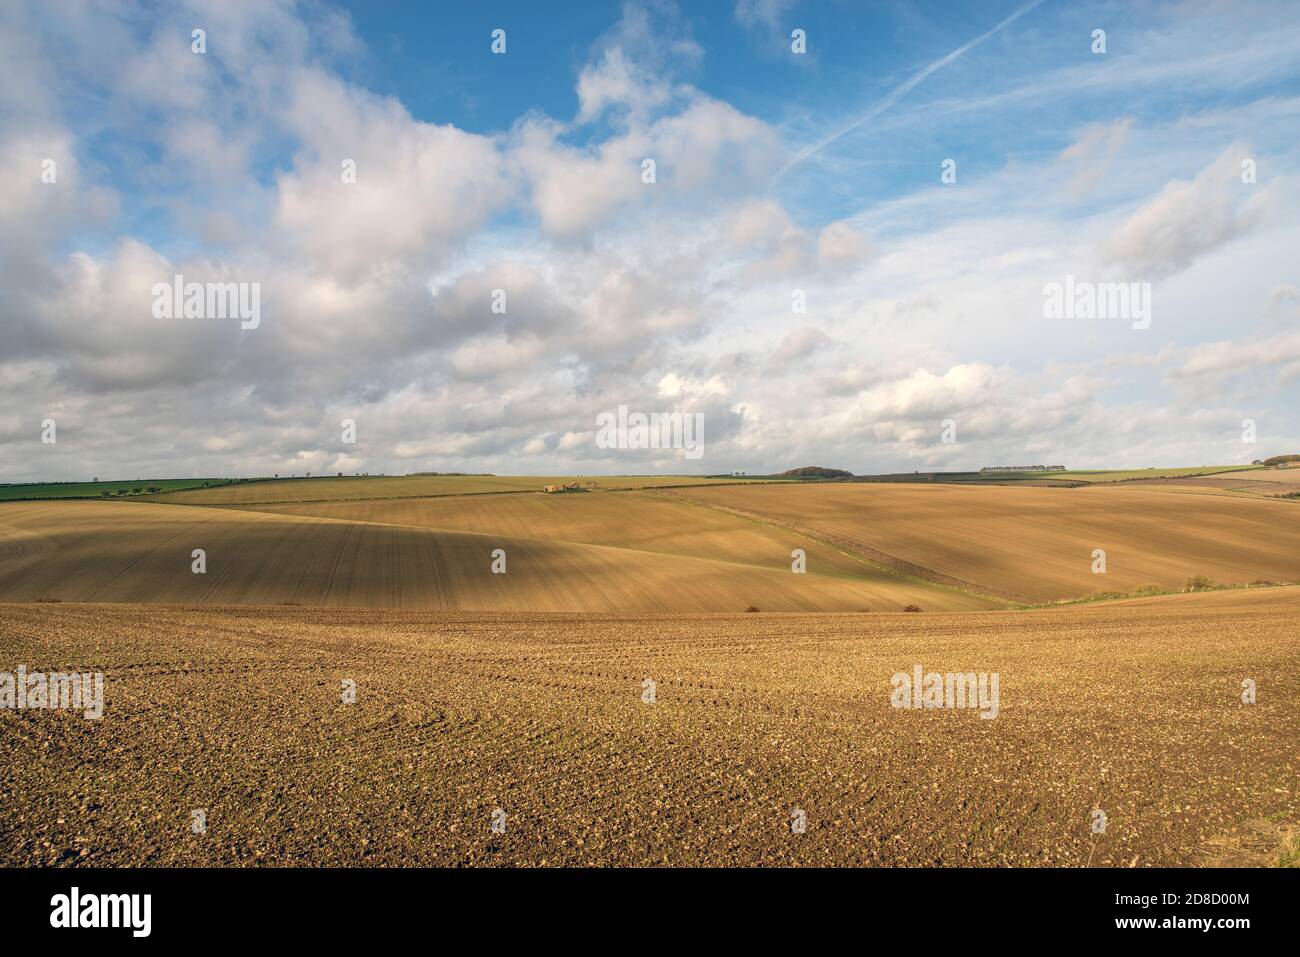 Vista di una fattoria derelict su campi ondulati arati a strisce in una giornata di sole con cielo nuvoloso. Foto Stock